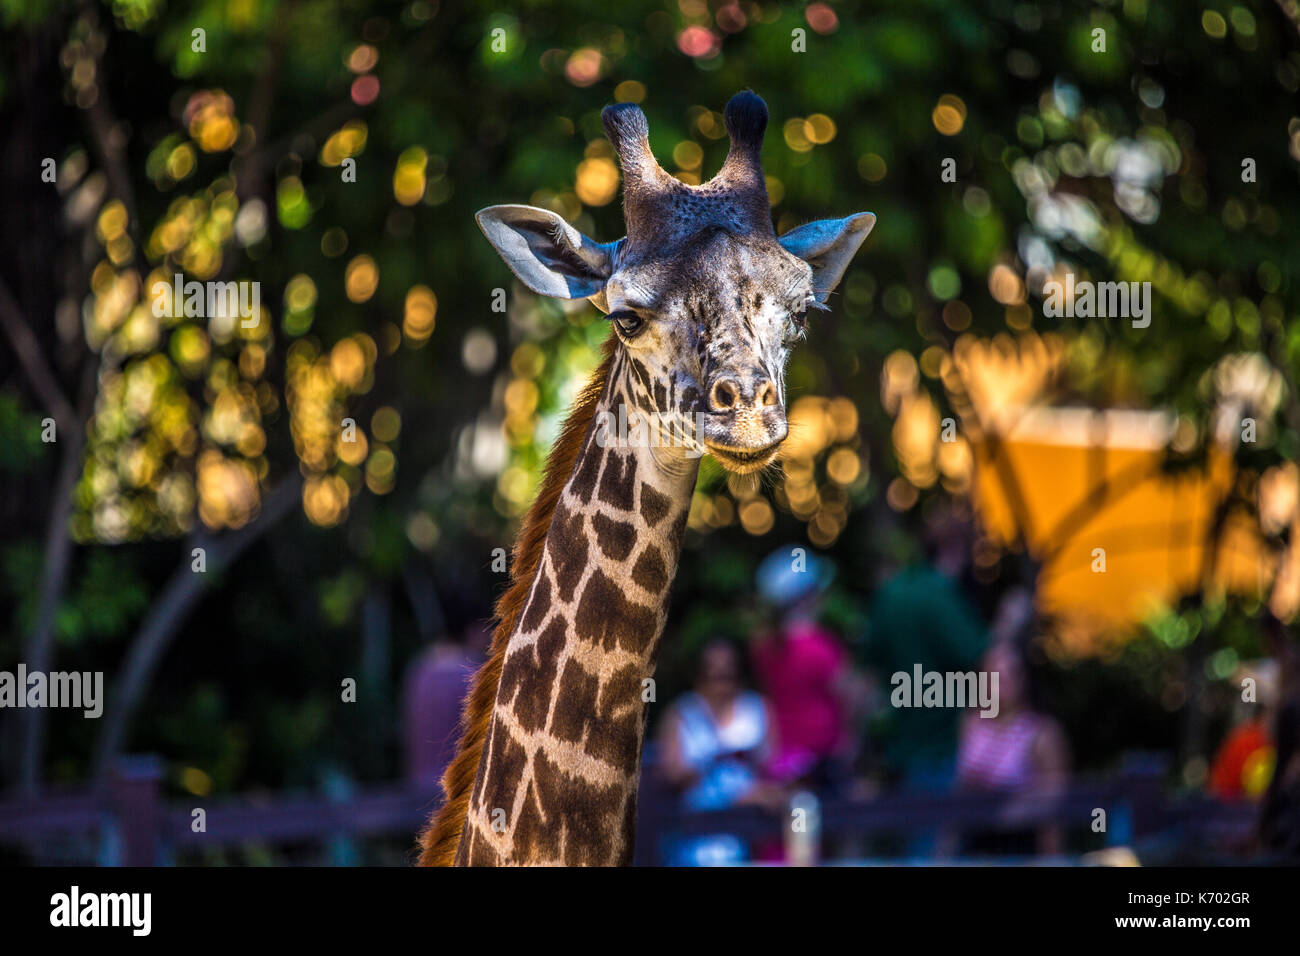 Giraffe pose Stock Photo